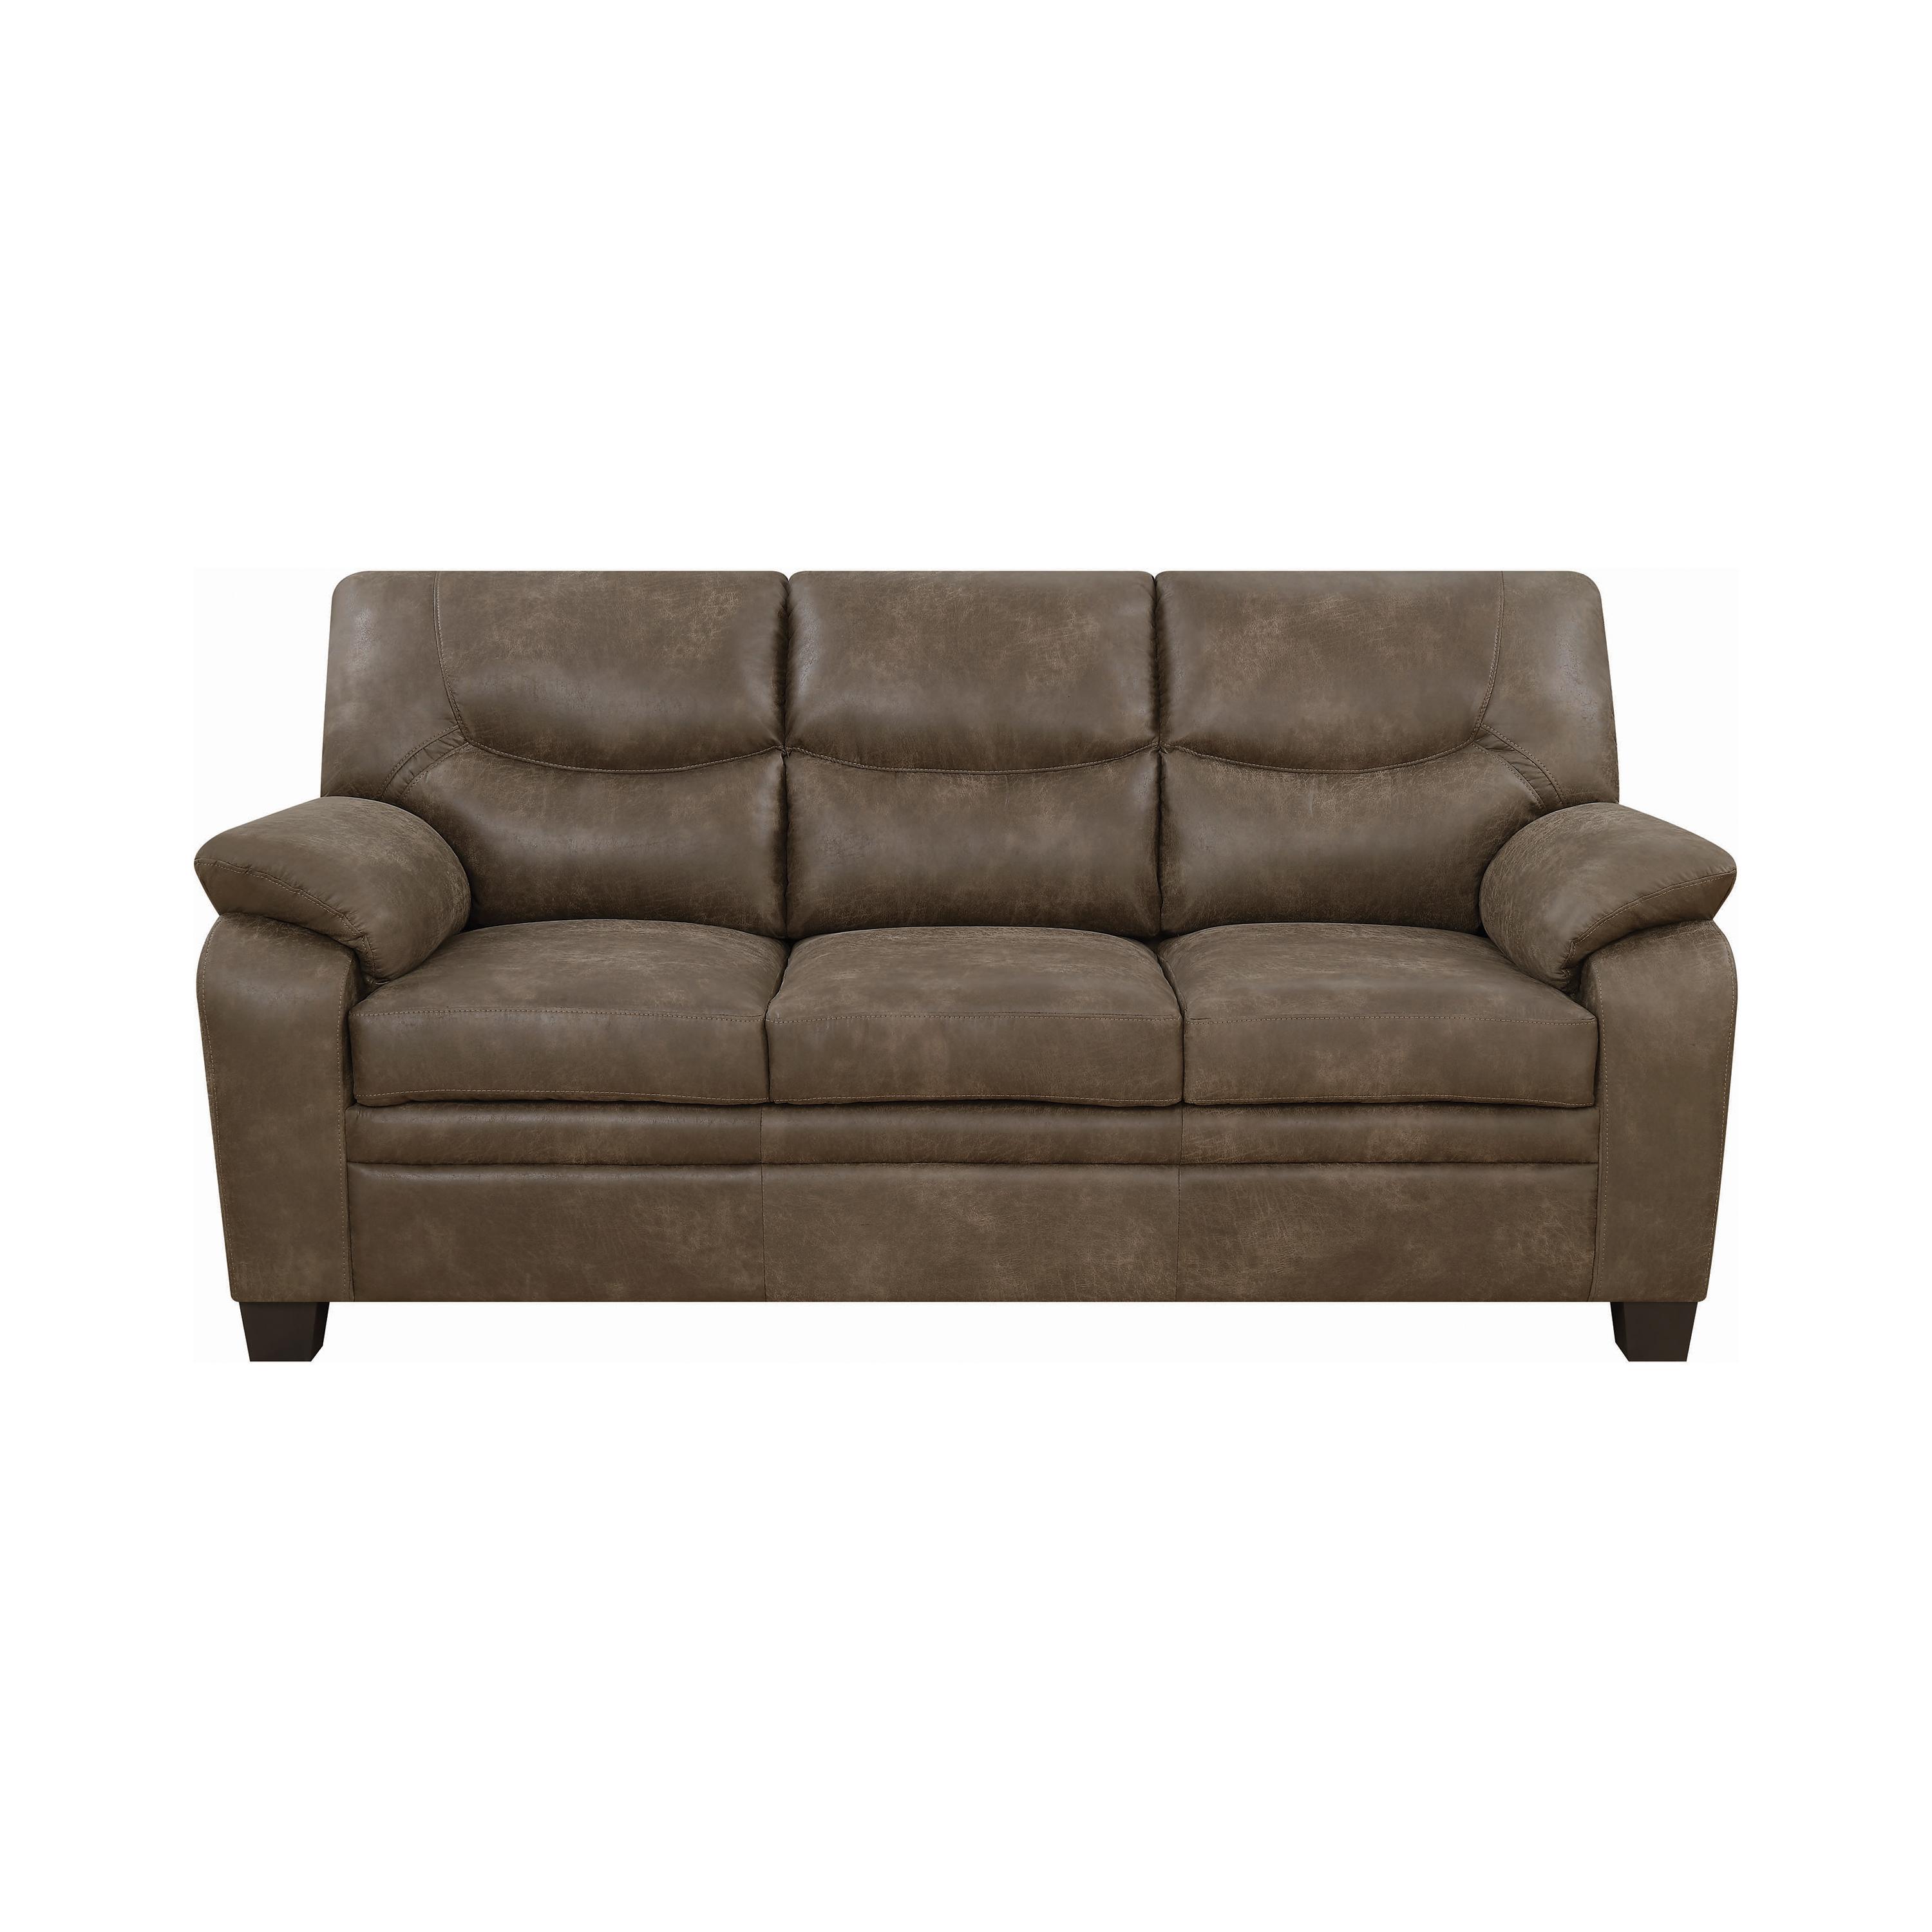 Classic Sofa 506561 Meagan 506561 in Brown 